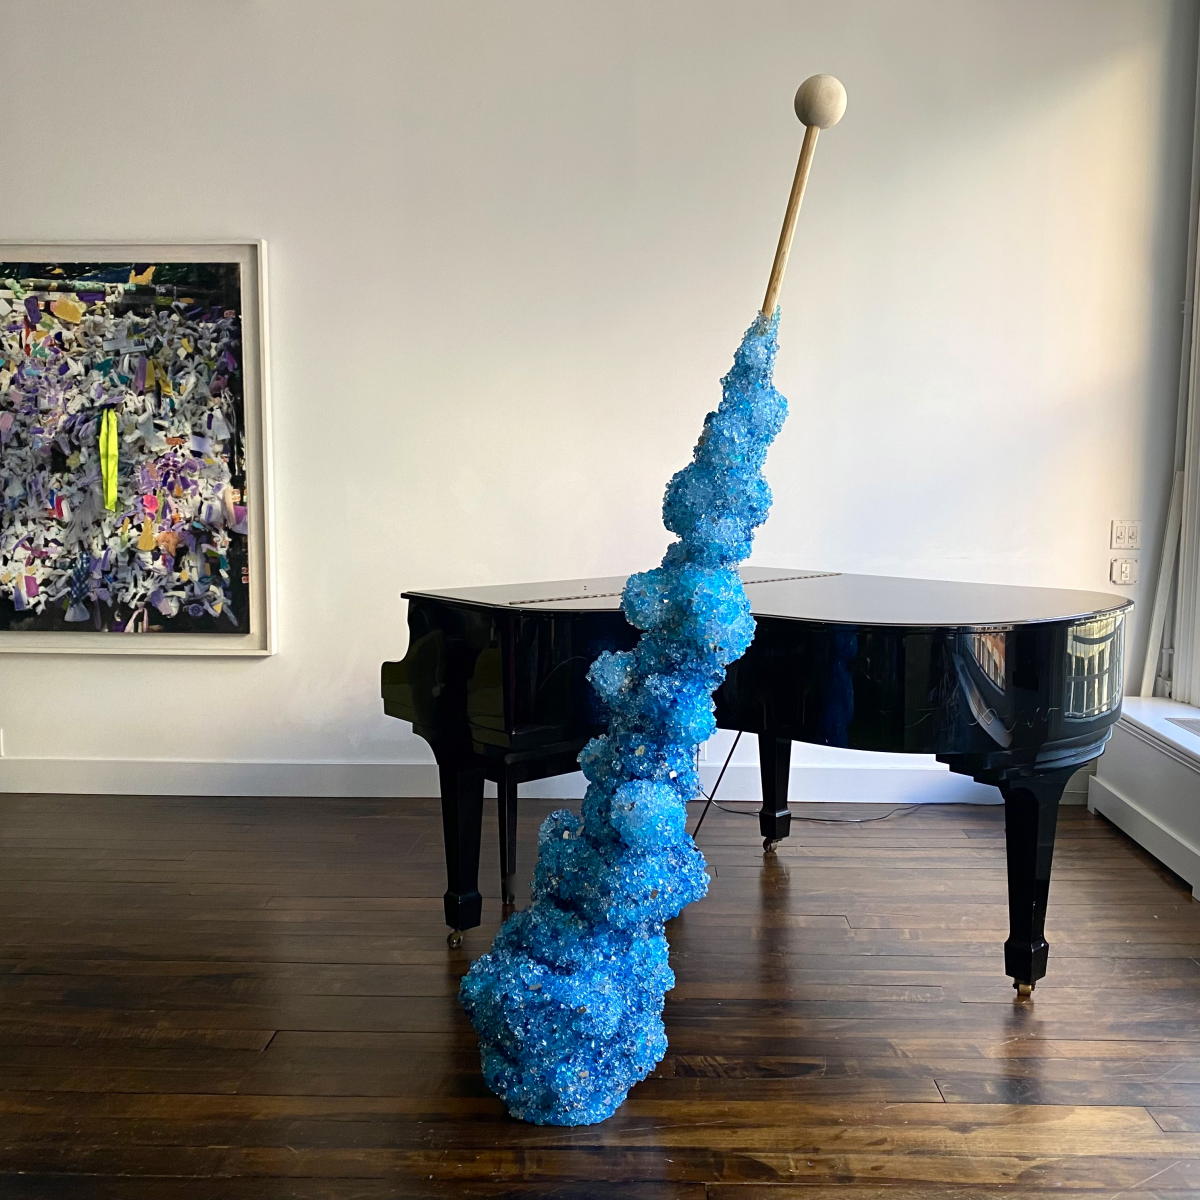 Sugar Stick | "Small Bright Blue" | Studio View